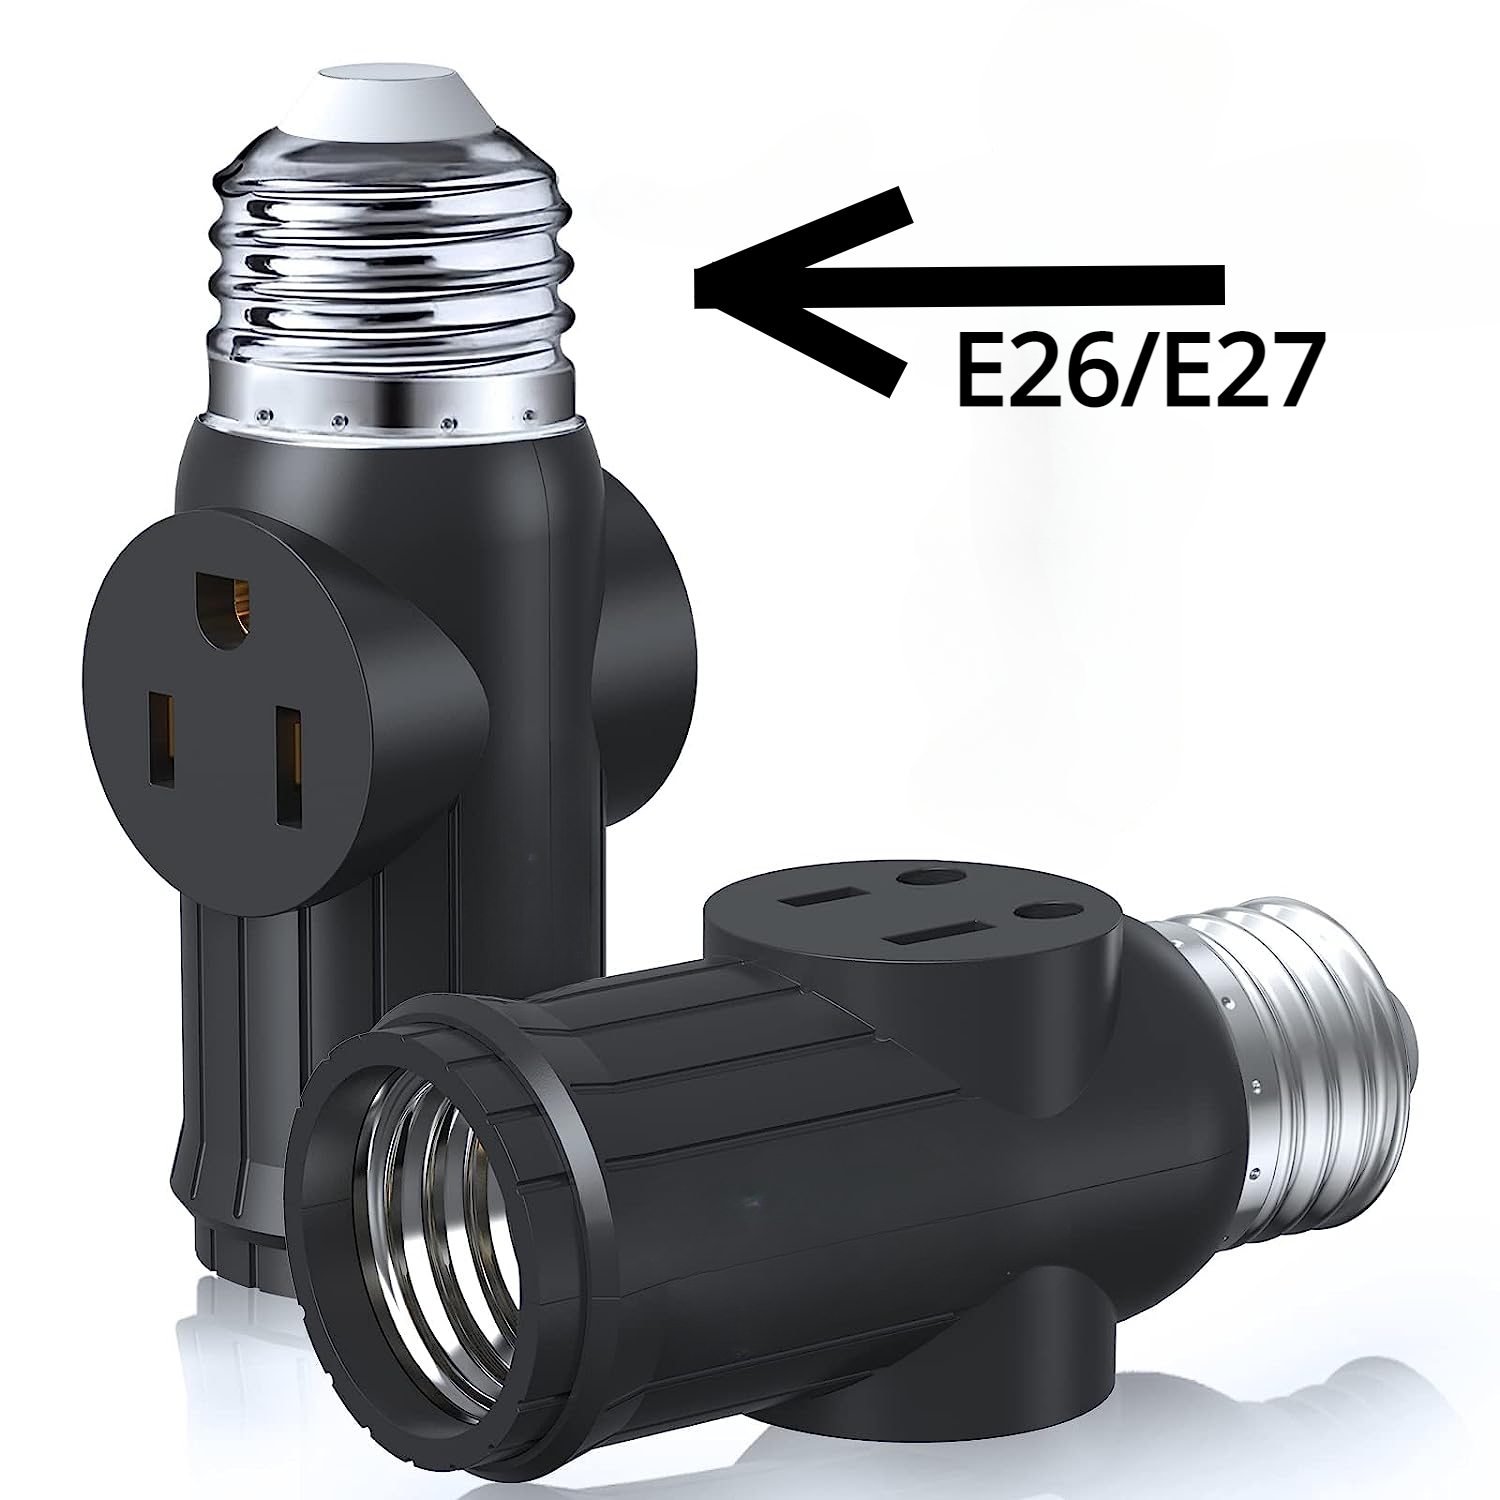 CAXUSD 2 unids bombilla enchufe enchufe lámpara soporte adaptador de  enchufe de luz toma de luz enchufe adaptador de enchufe temporizador  bombilla